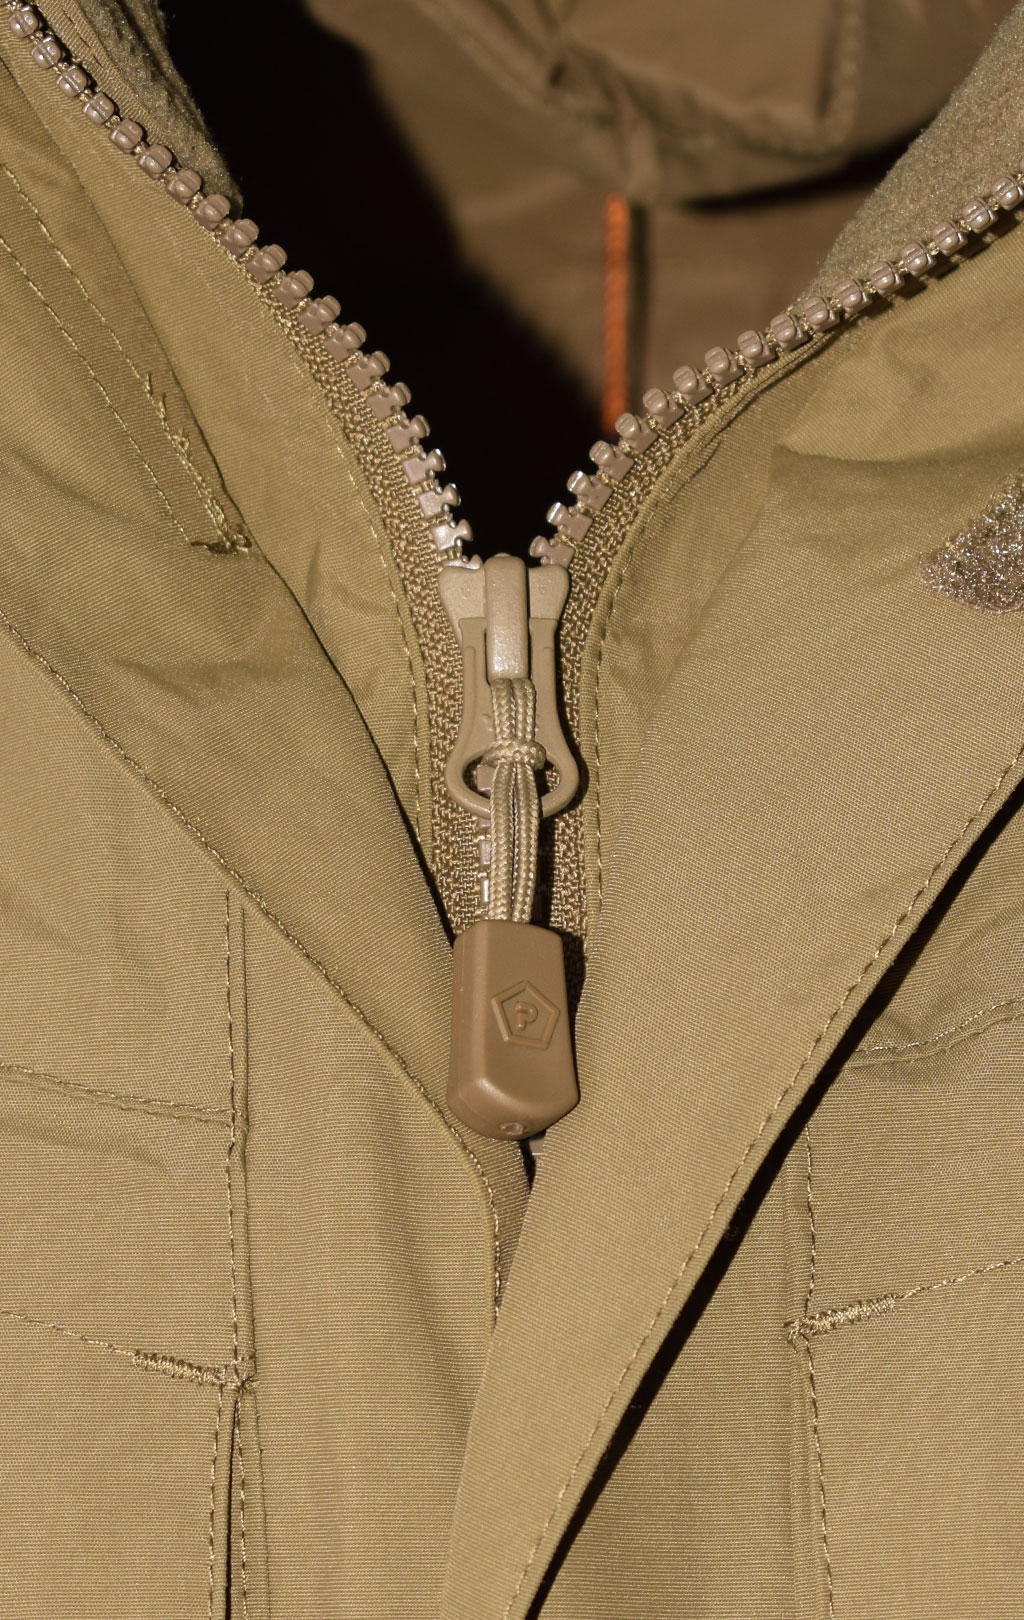 Куртка тактическая Pentagon мембрана GEN V3.0 с подстёжкой coyote 01002-3.0 